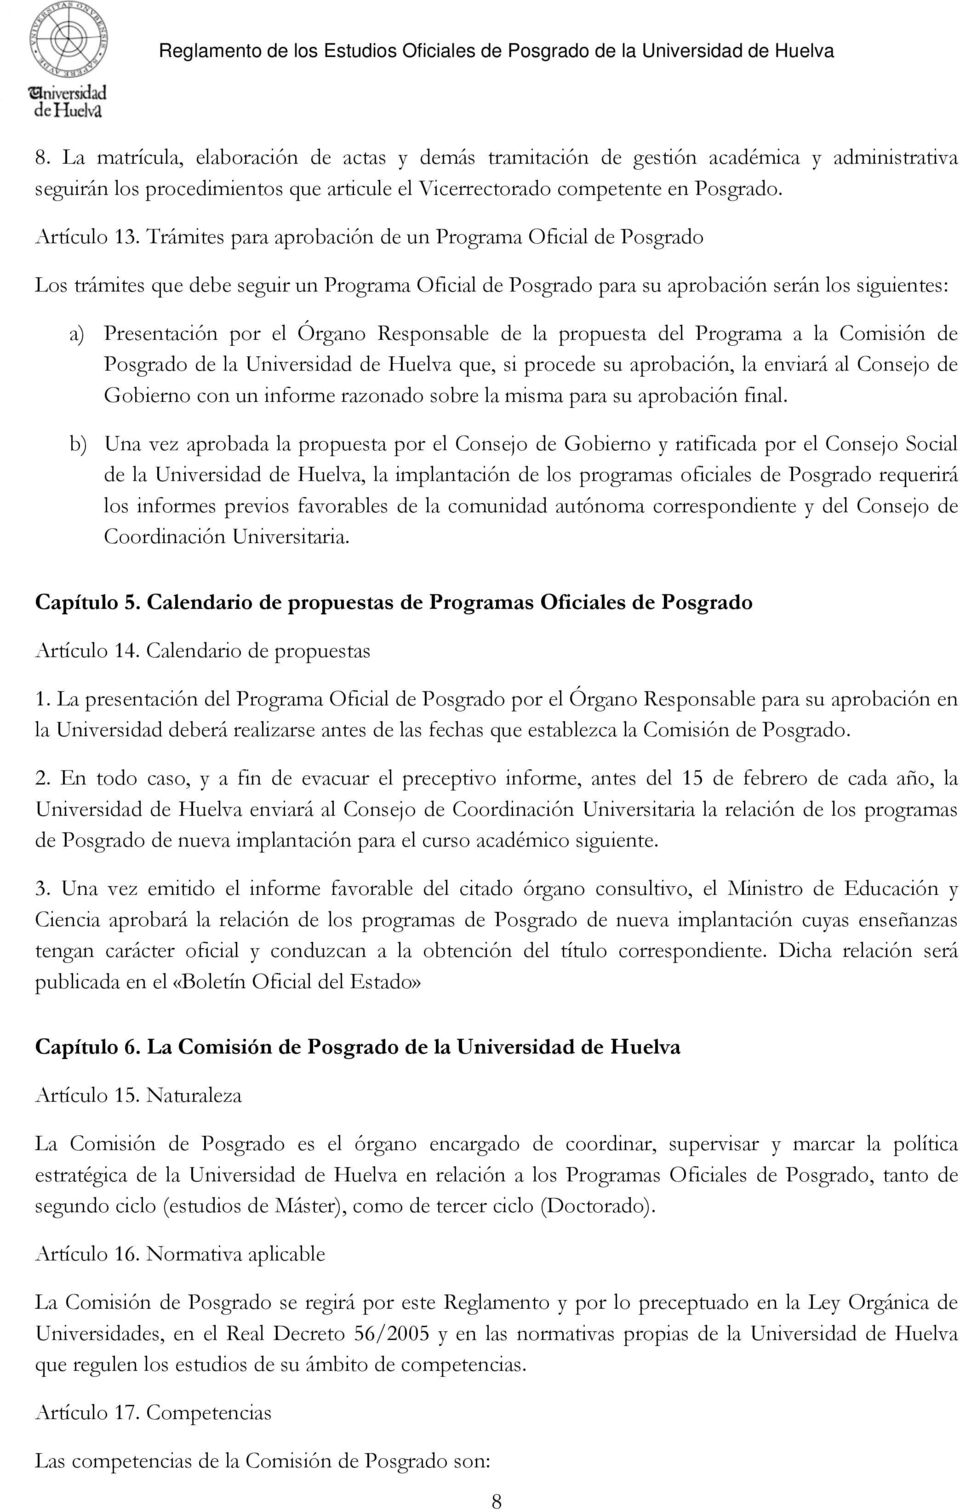 Responsable de la propuesta del Programa a la Comisión de Posgrado de la Universidad de Huelva que, si procede su aprobación, la enviará al Consejo de Gobierno con un informe razonado sobre la misma